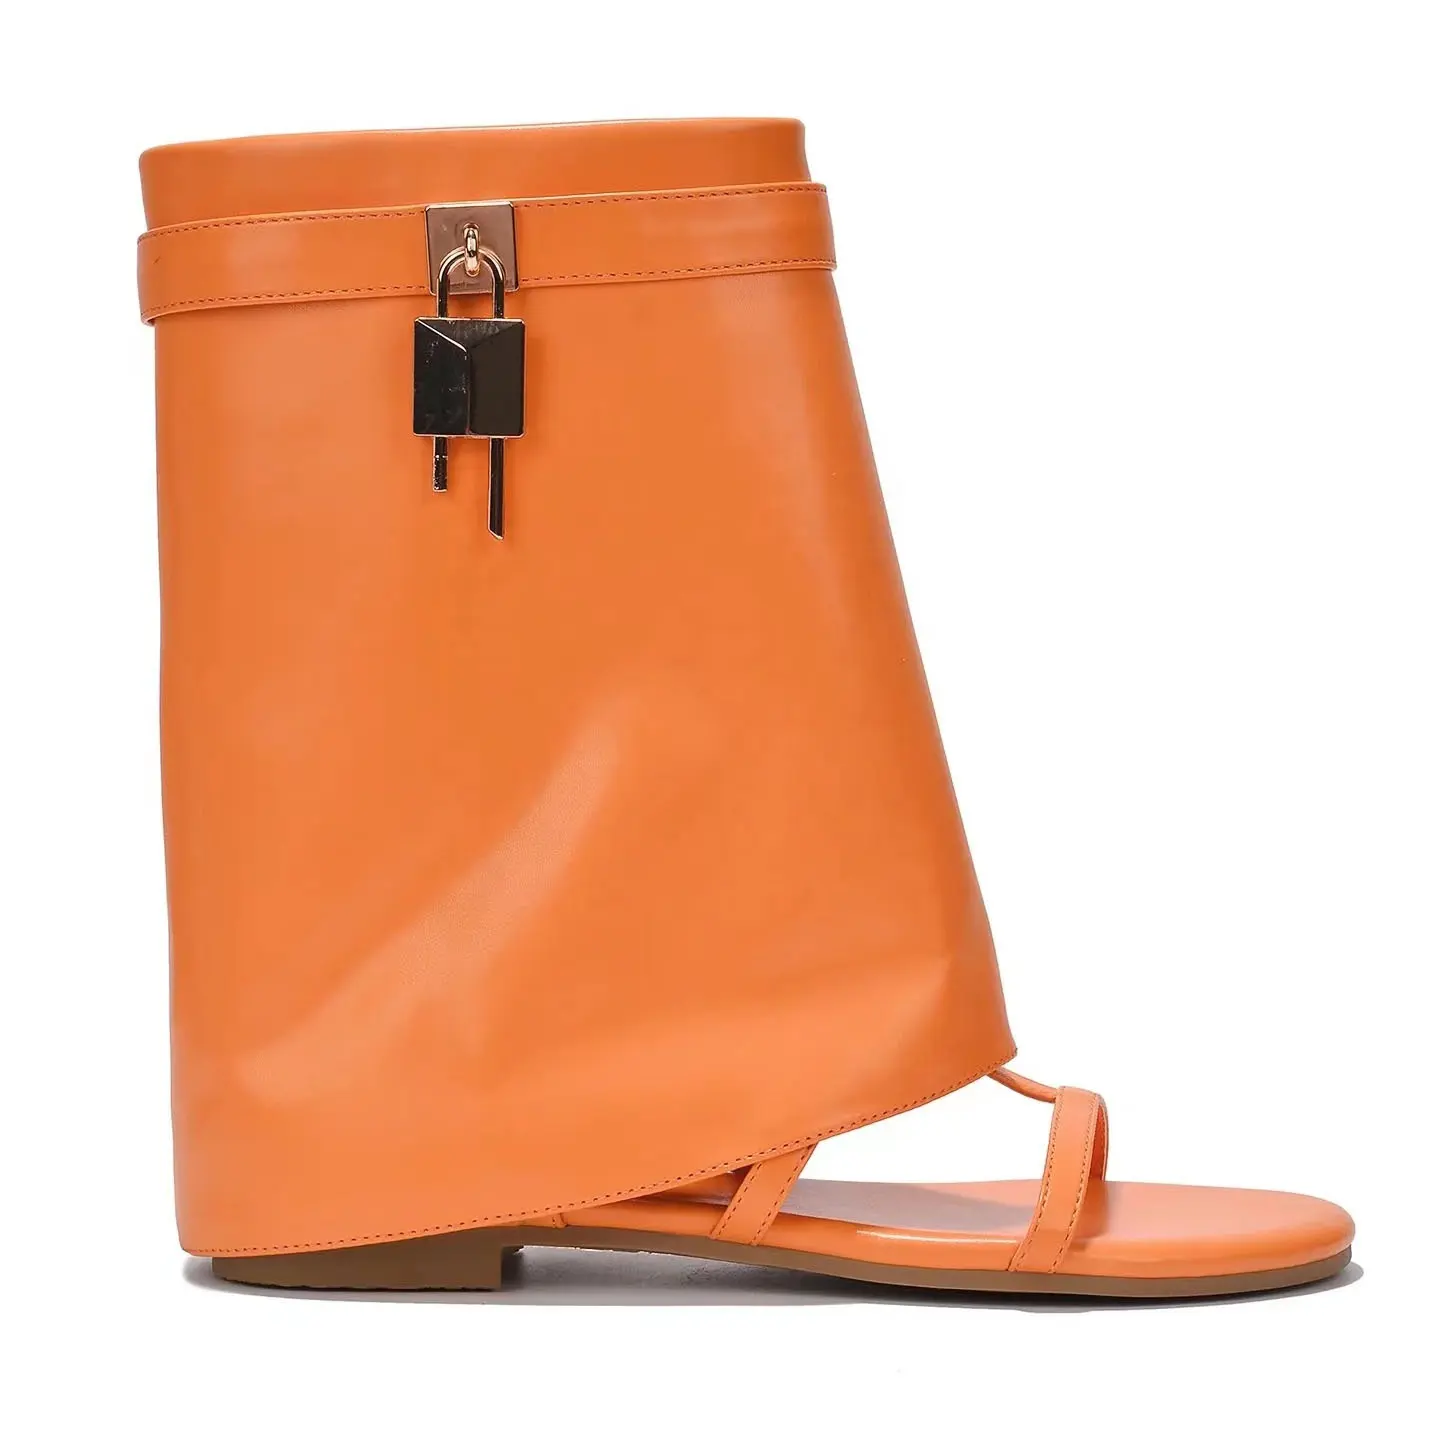 Anmairon sandal Wedge hak datar, Kasut bot kulit oranye dengan Logo kustom musim panas